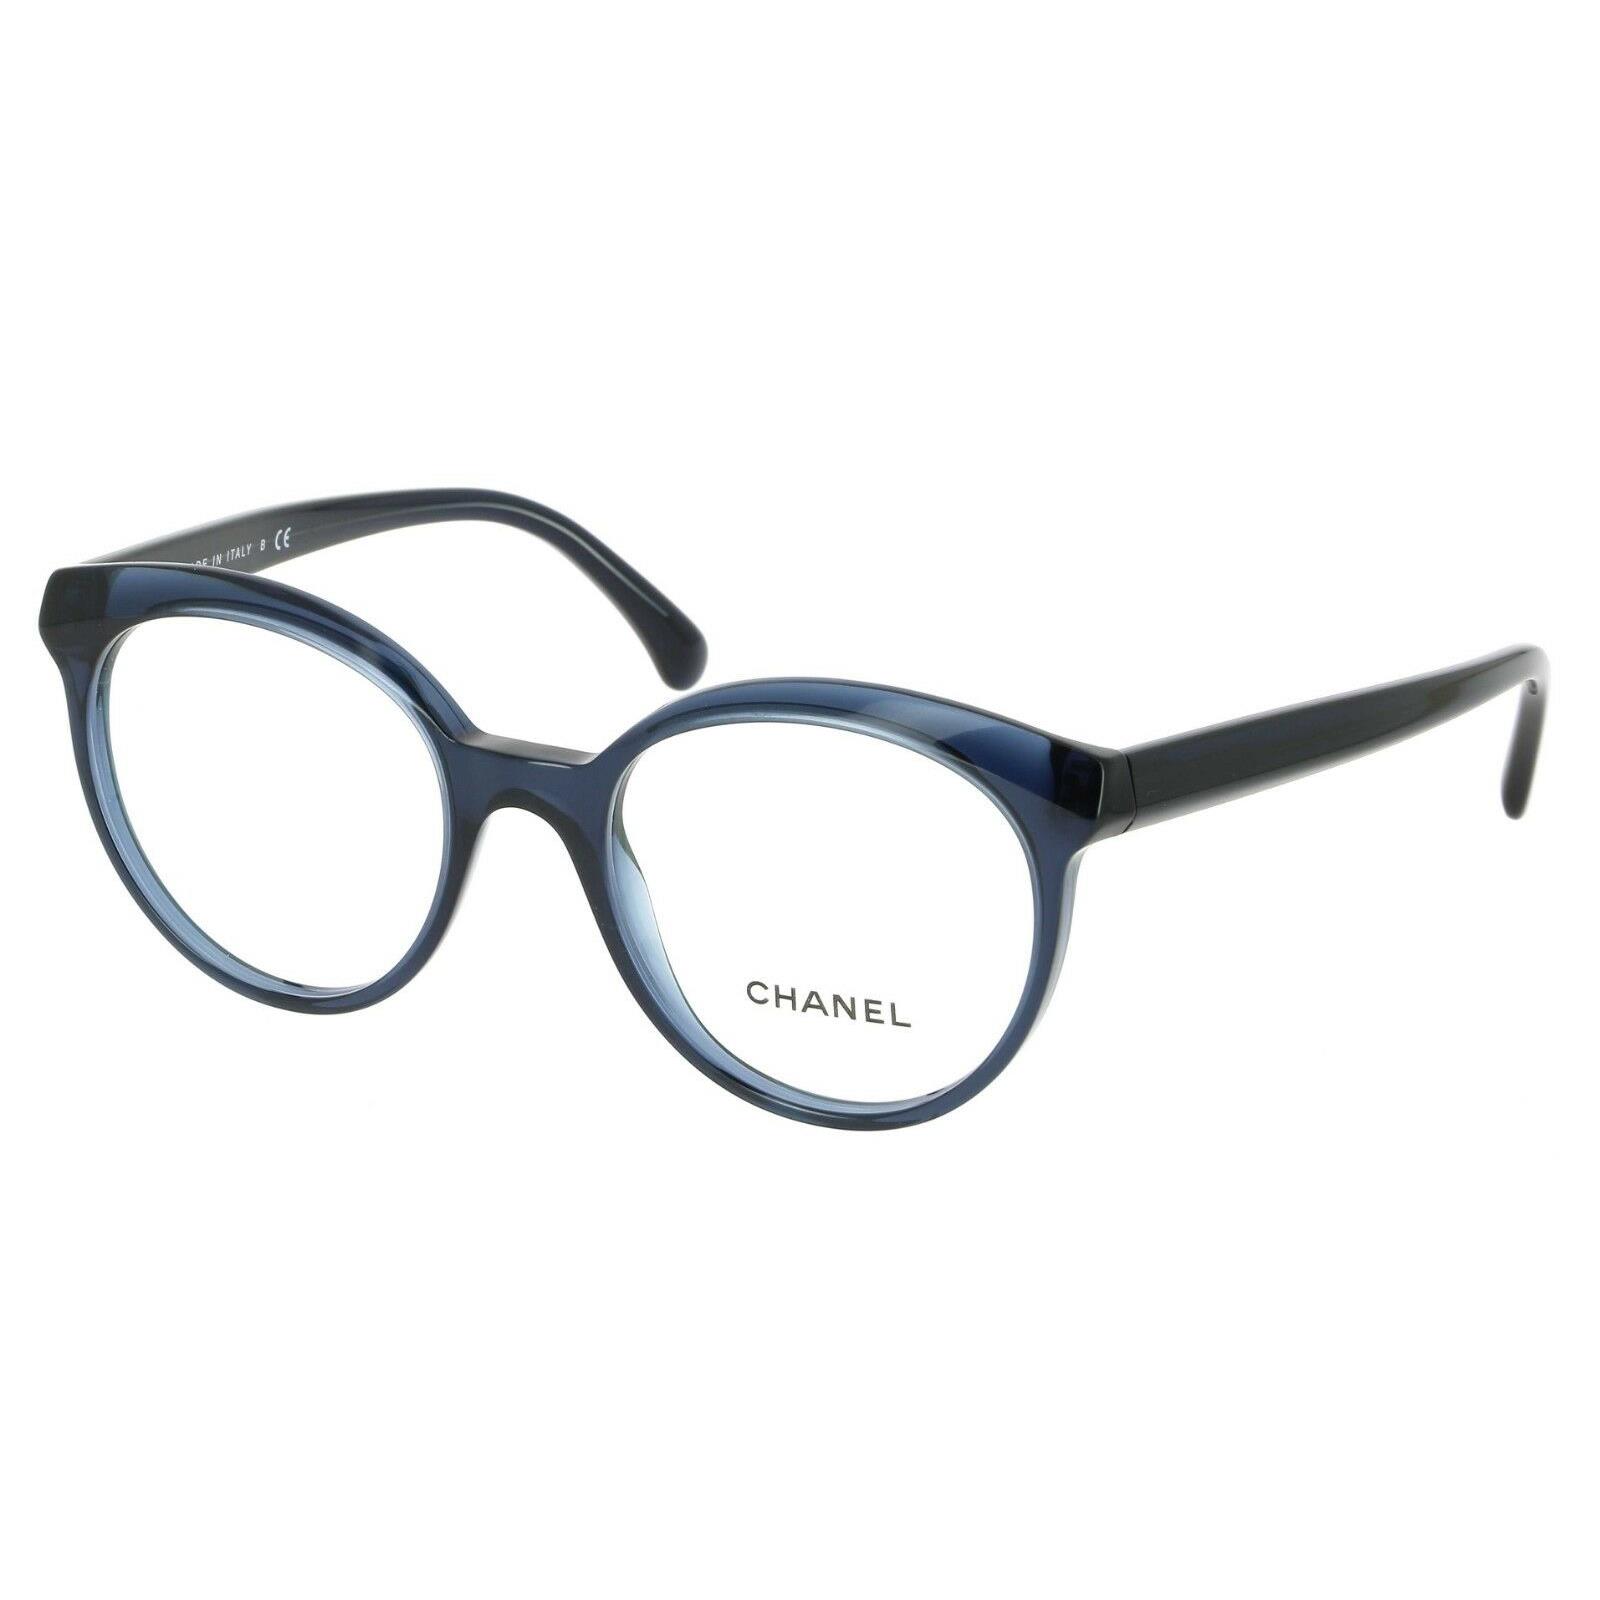 Chanel CH 3355 c.508 Transparent Blue Eyeglasses Frame 51-19